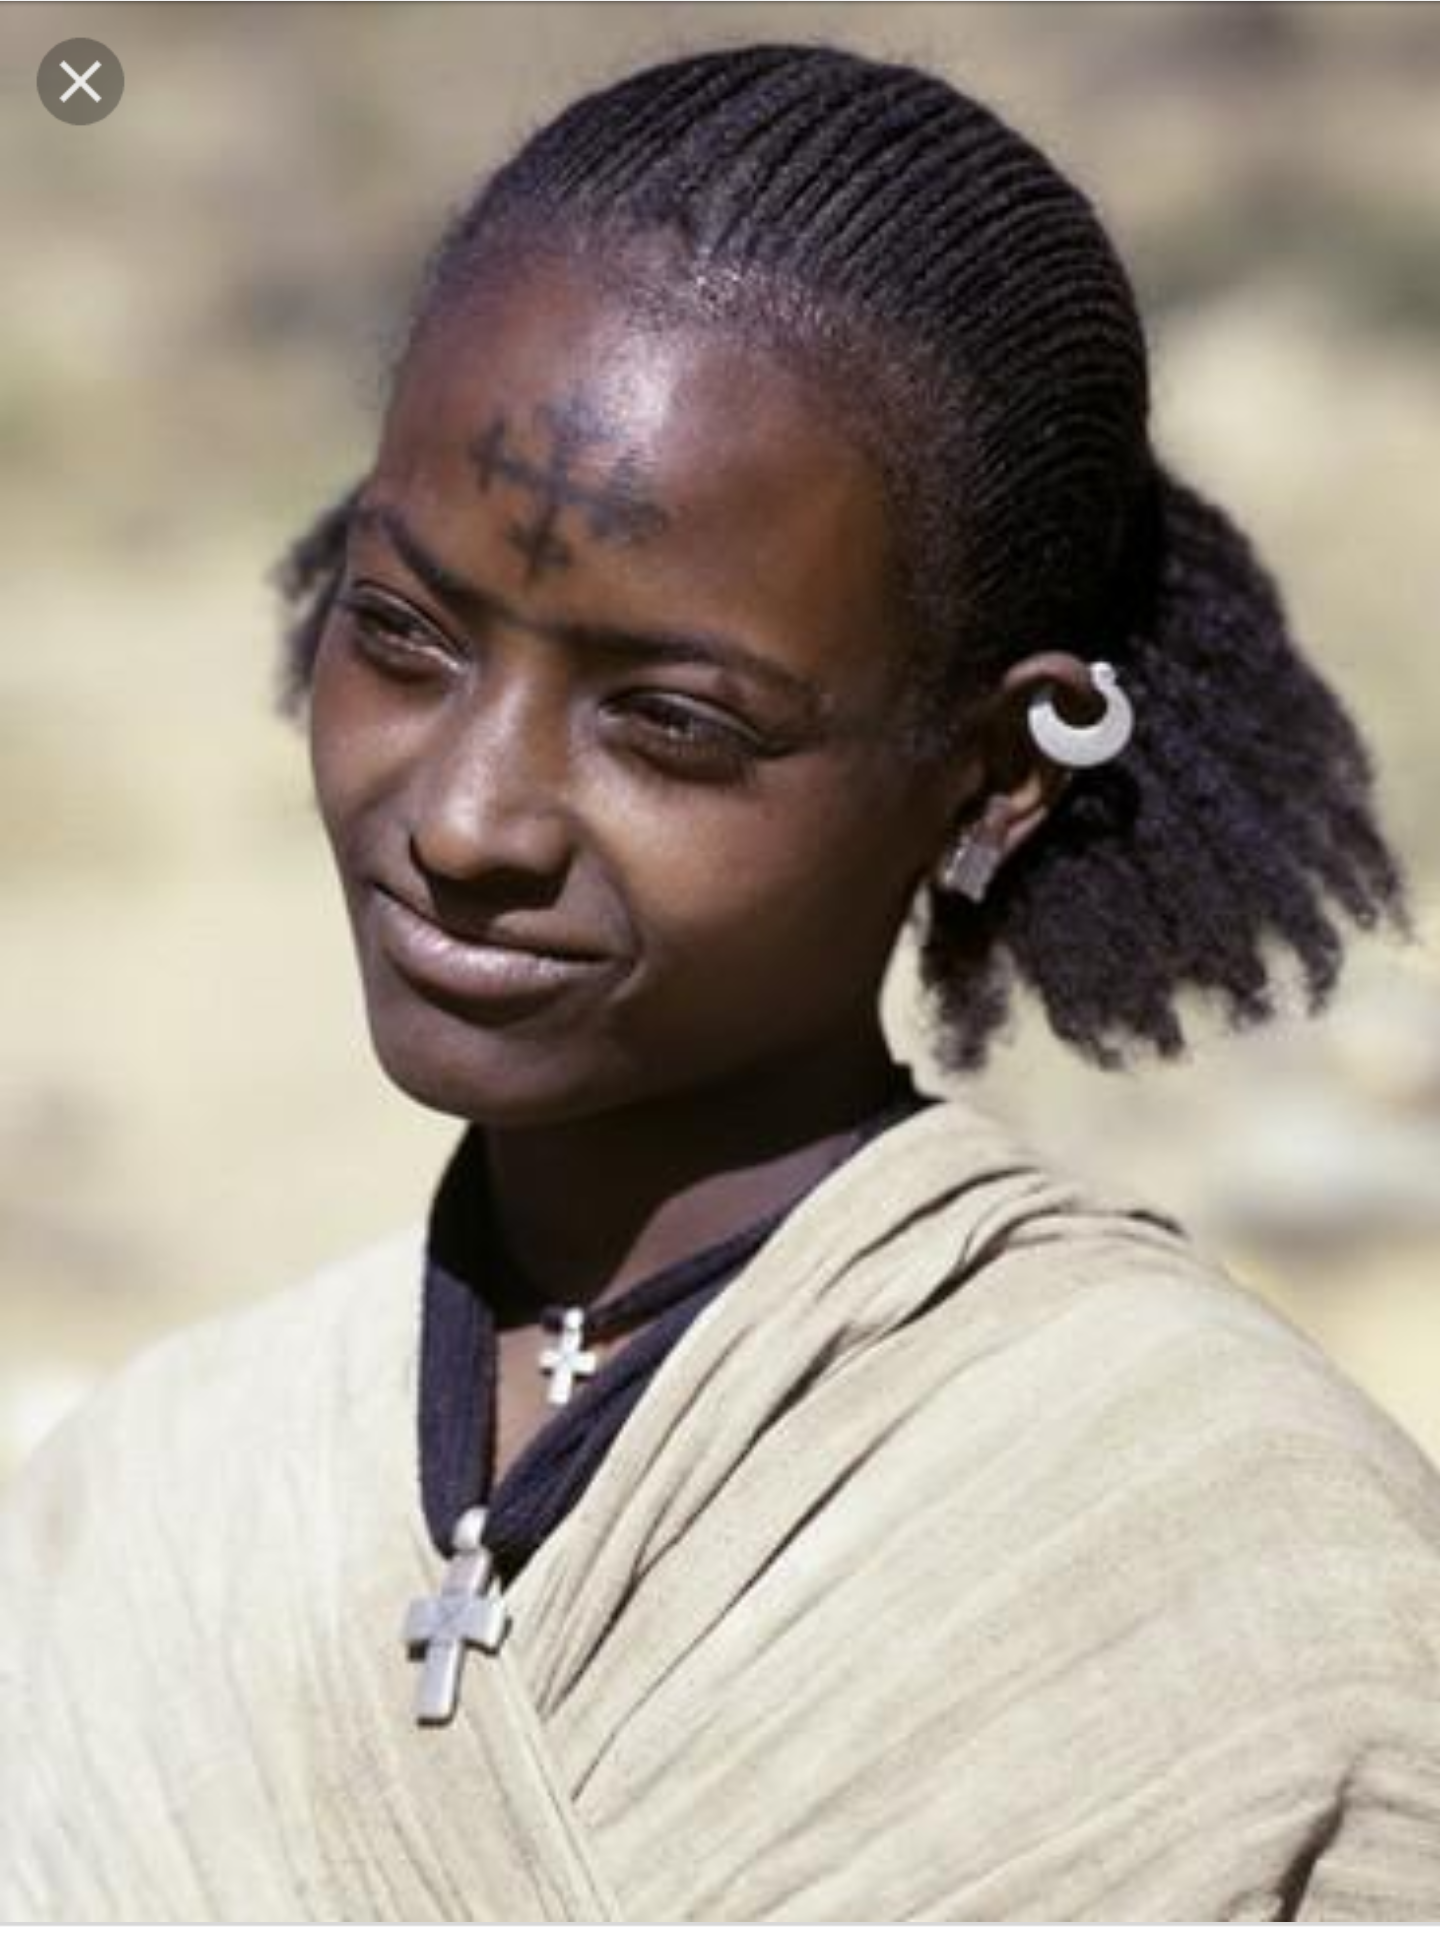 Лицо негроидной расы. Абиссинцы эфиопы. Амхара Эфиопия. Амхара семиты. Африканцы негроидная раса.